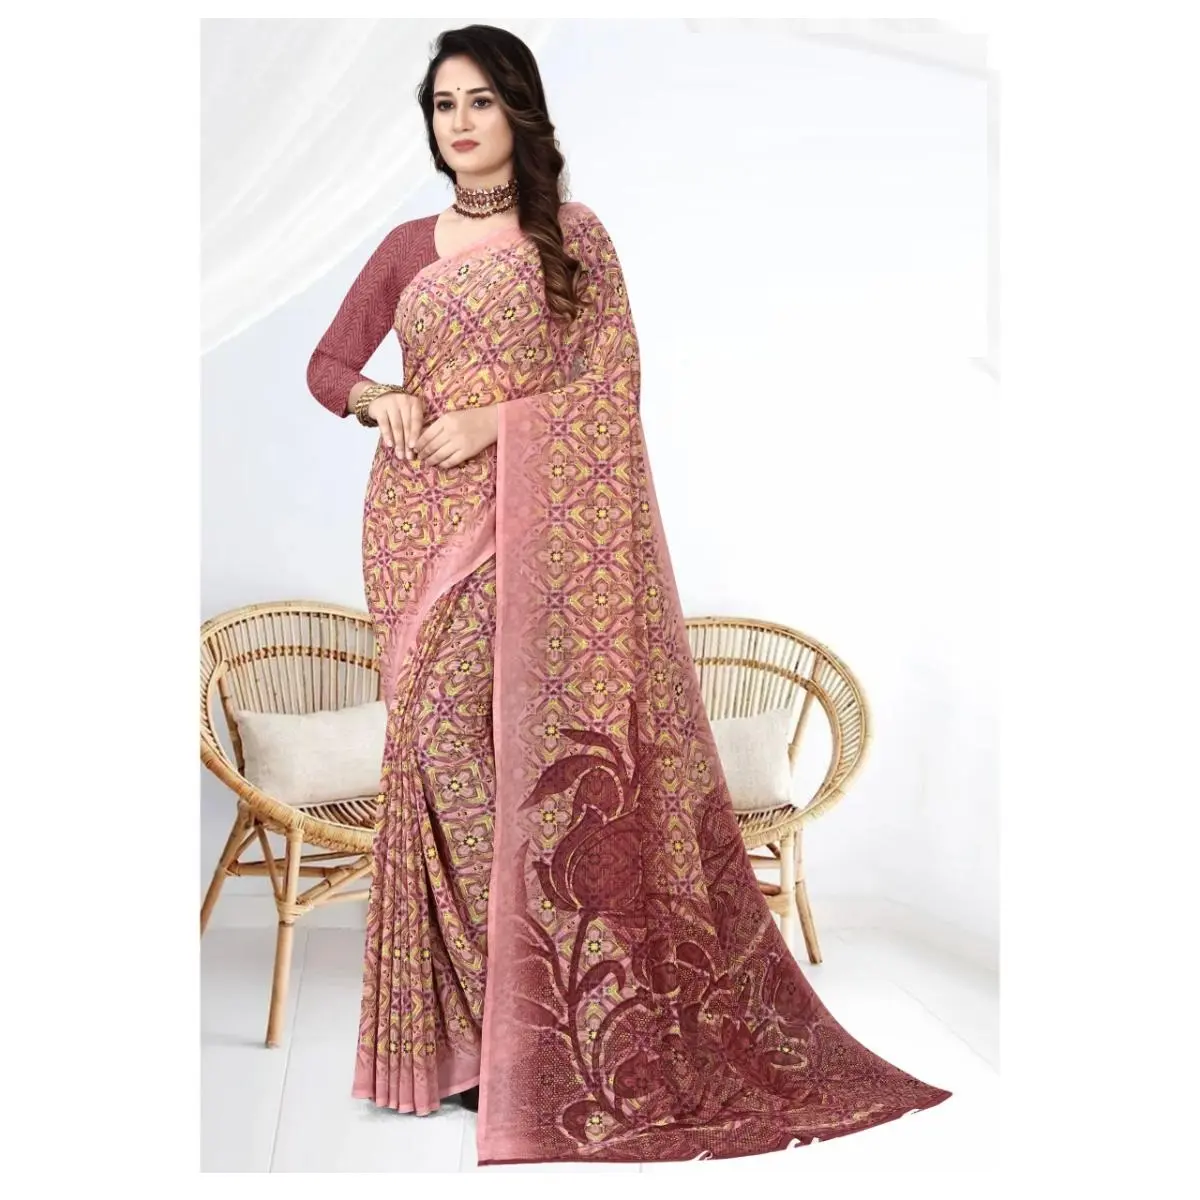 Индийская этническая одежда, разноцветный жоржет, женское сари с дополнительной блузкой, от индийского экспортера и производителя